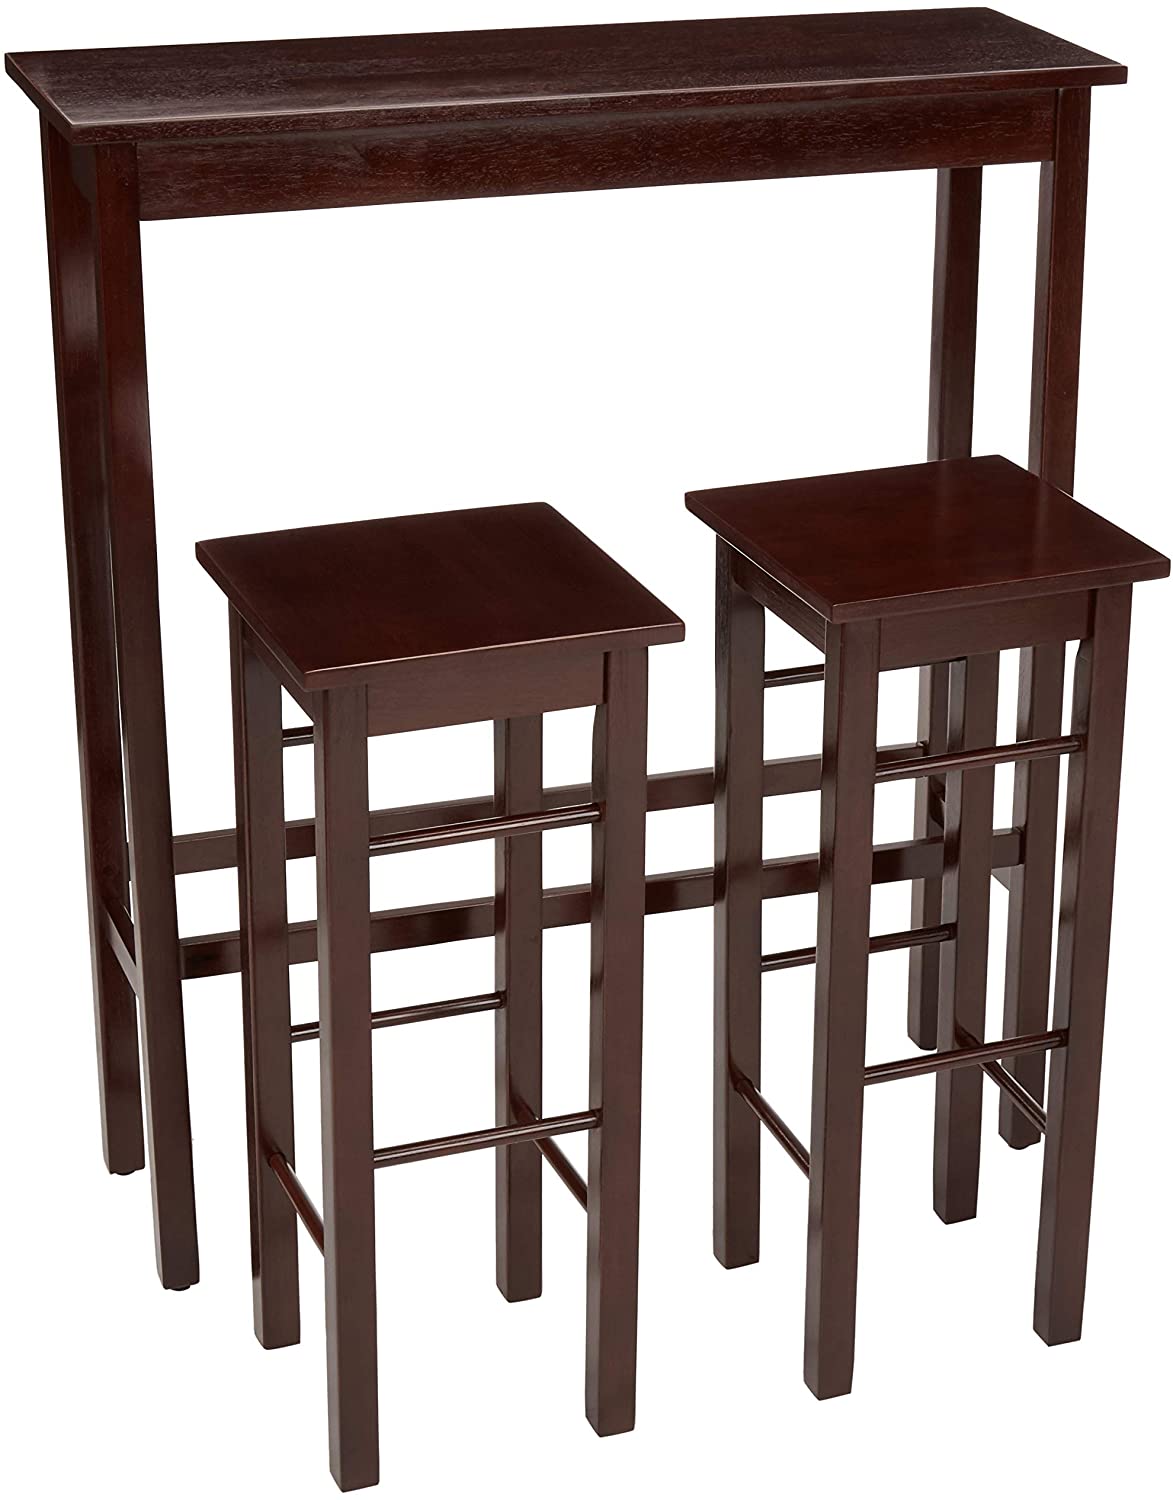 AmazonBasics Wood Kitchen Bar Table Set, 3-Piece